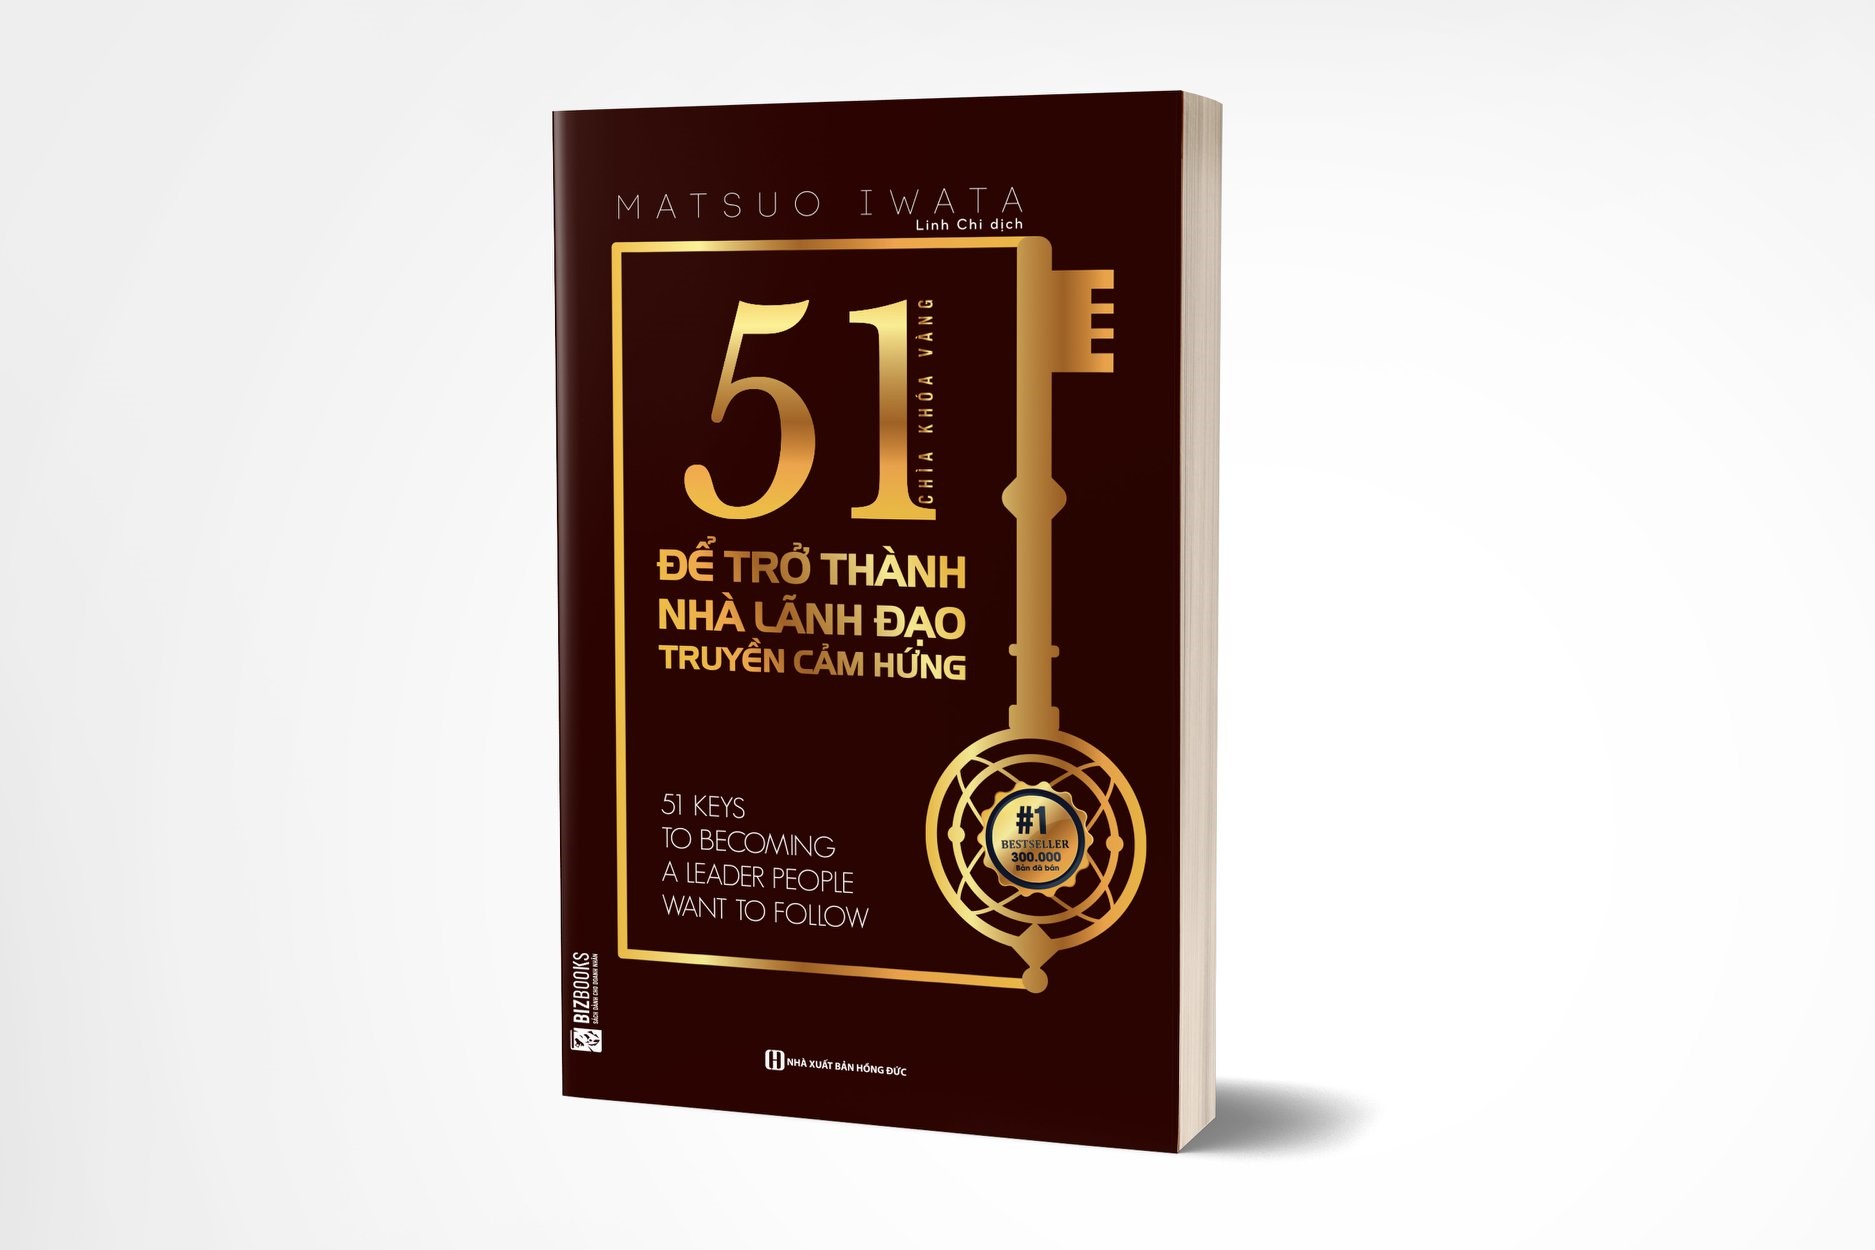 51 Chìa khóa vàng để trở thành nhà lãnh đạo truyền cảm hứng